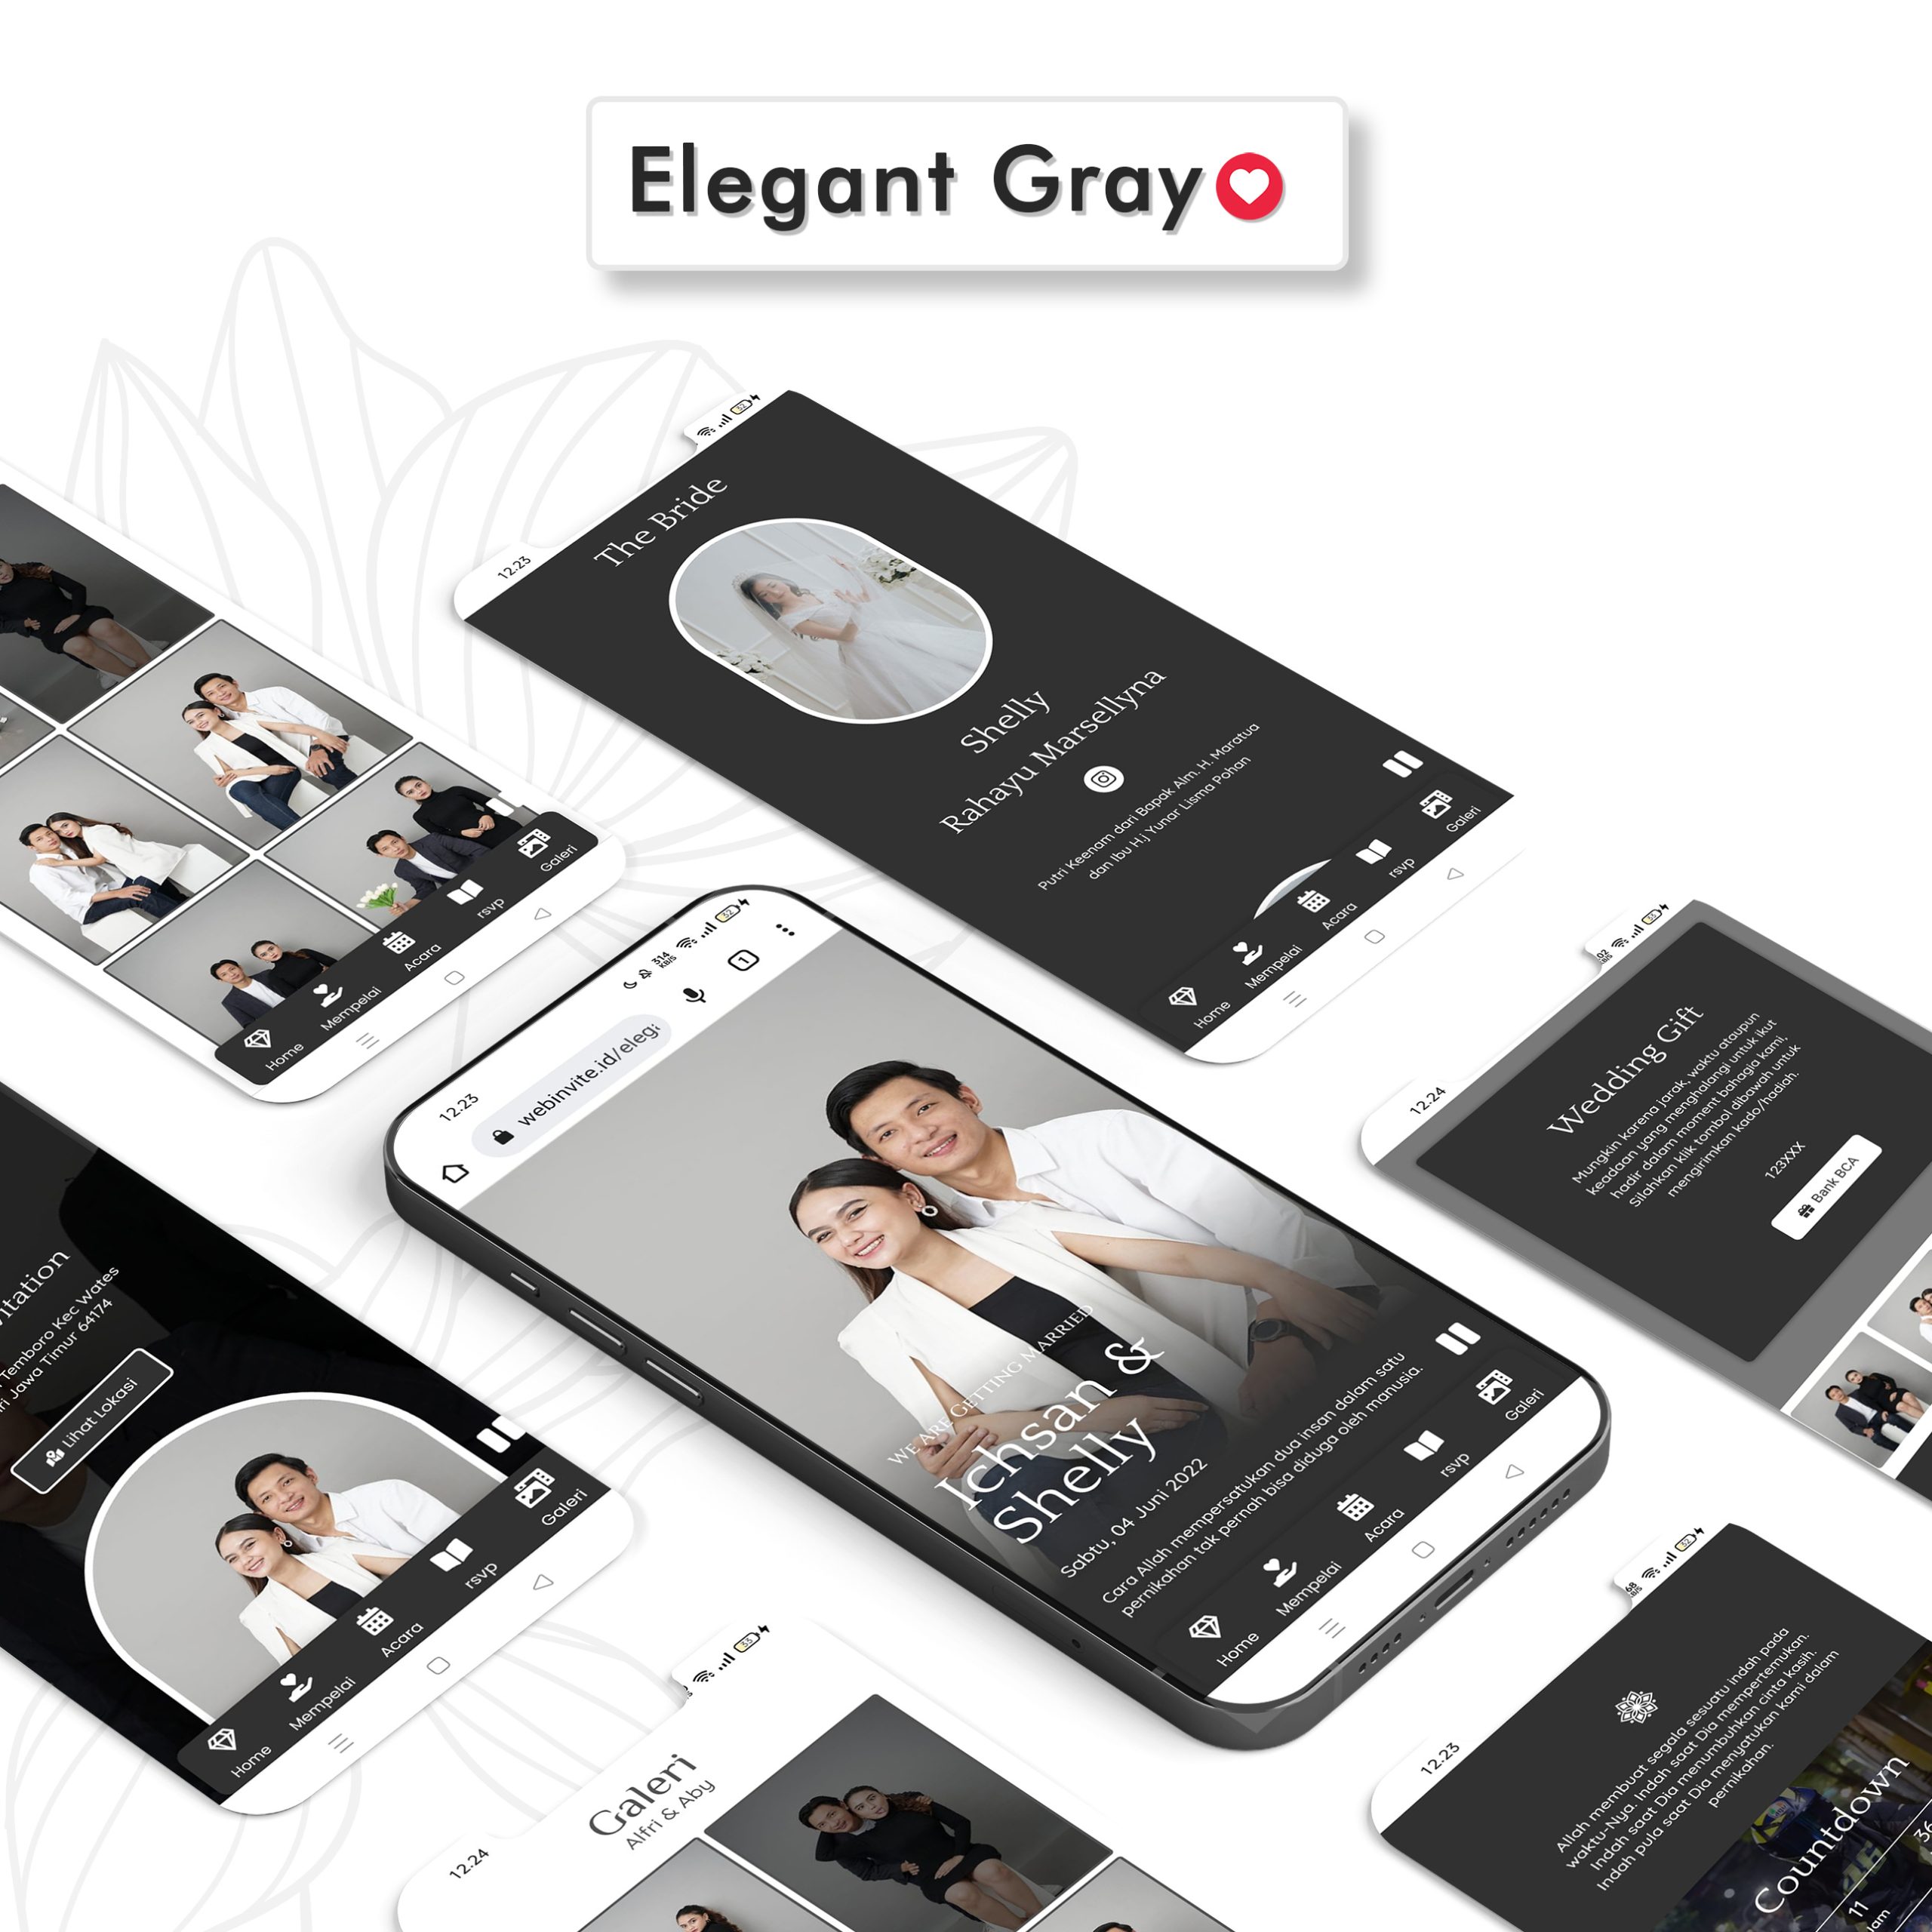 Elegant Gray Scaled.jpg